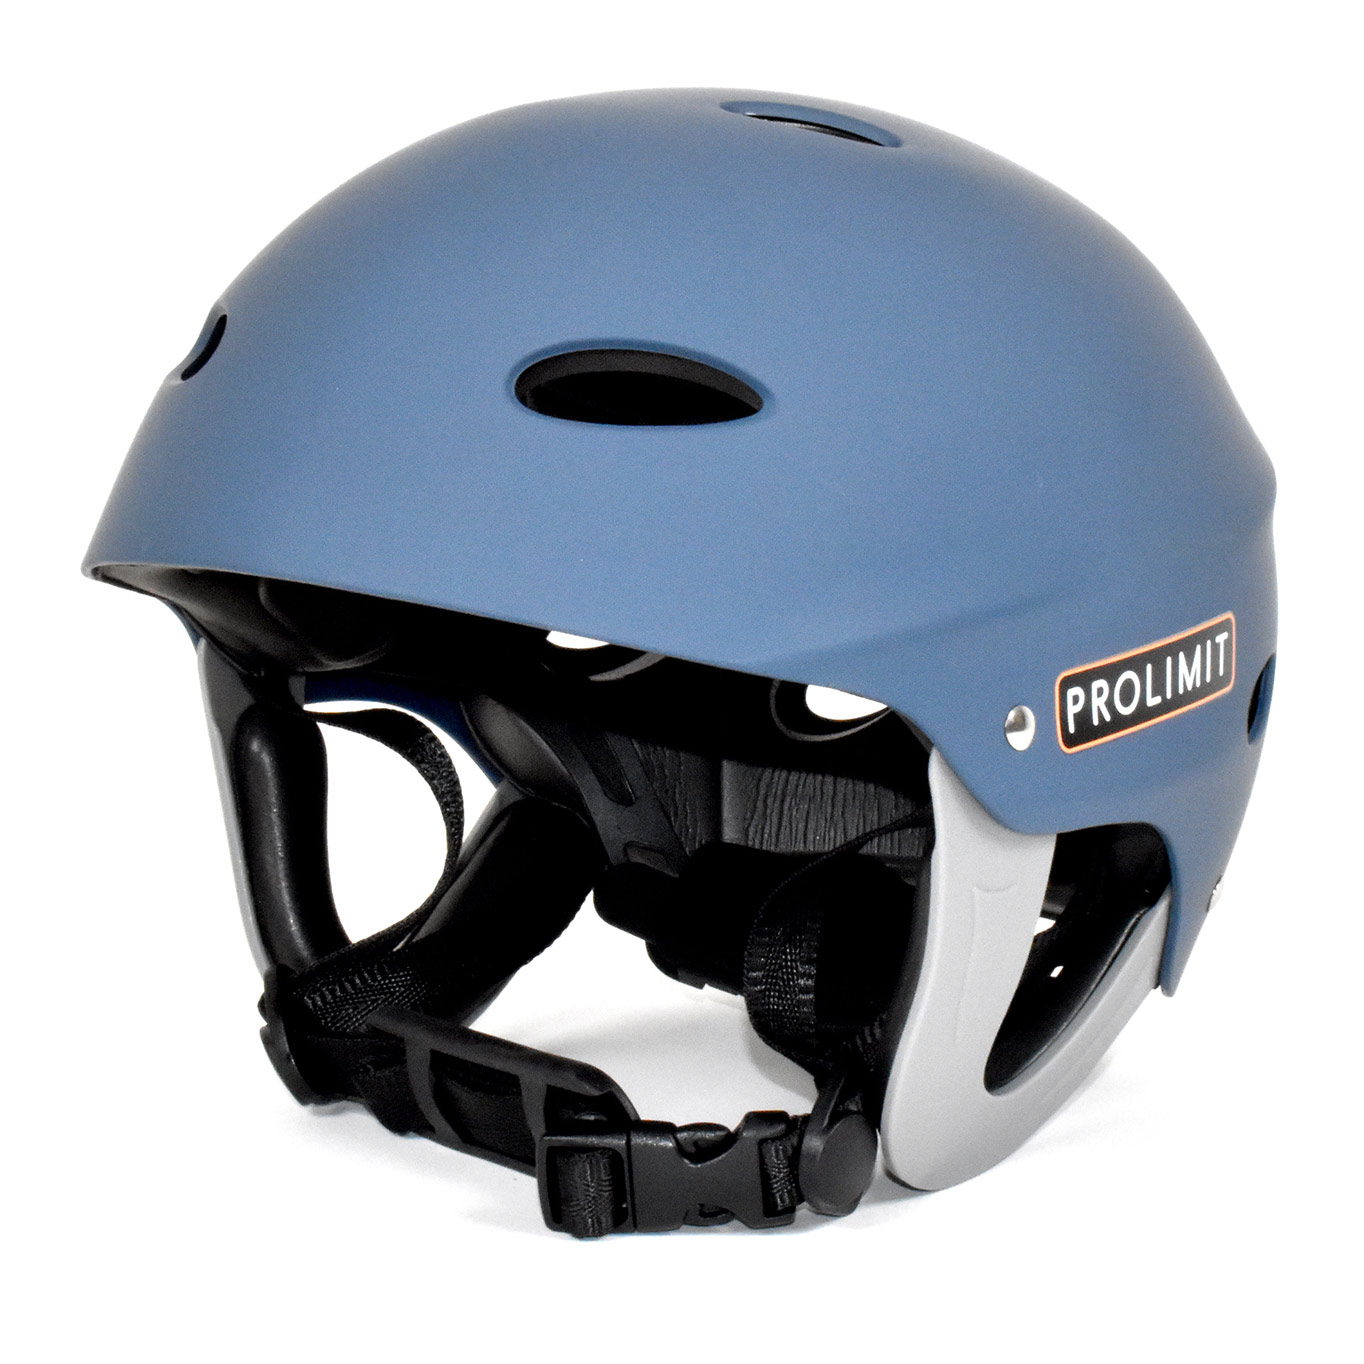 Watersport helmet Adjustable